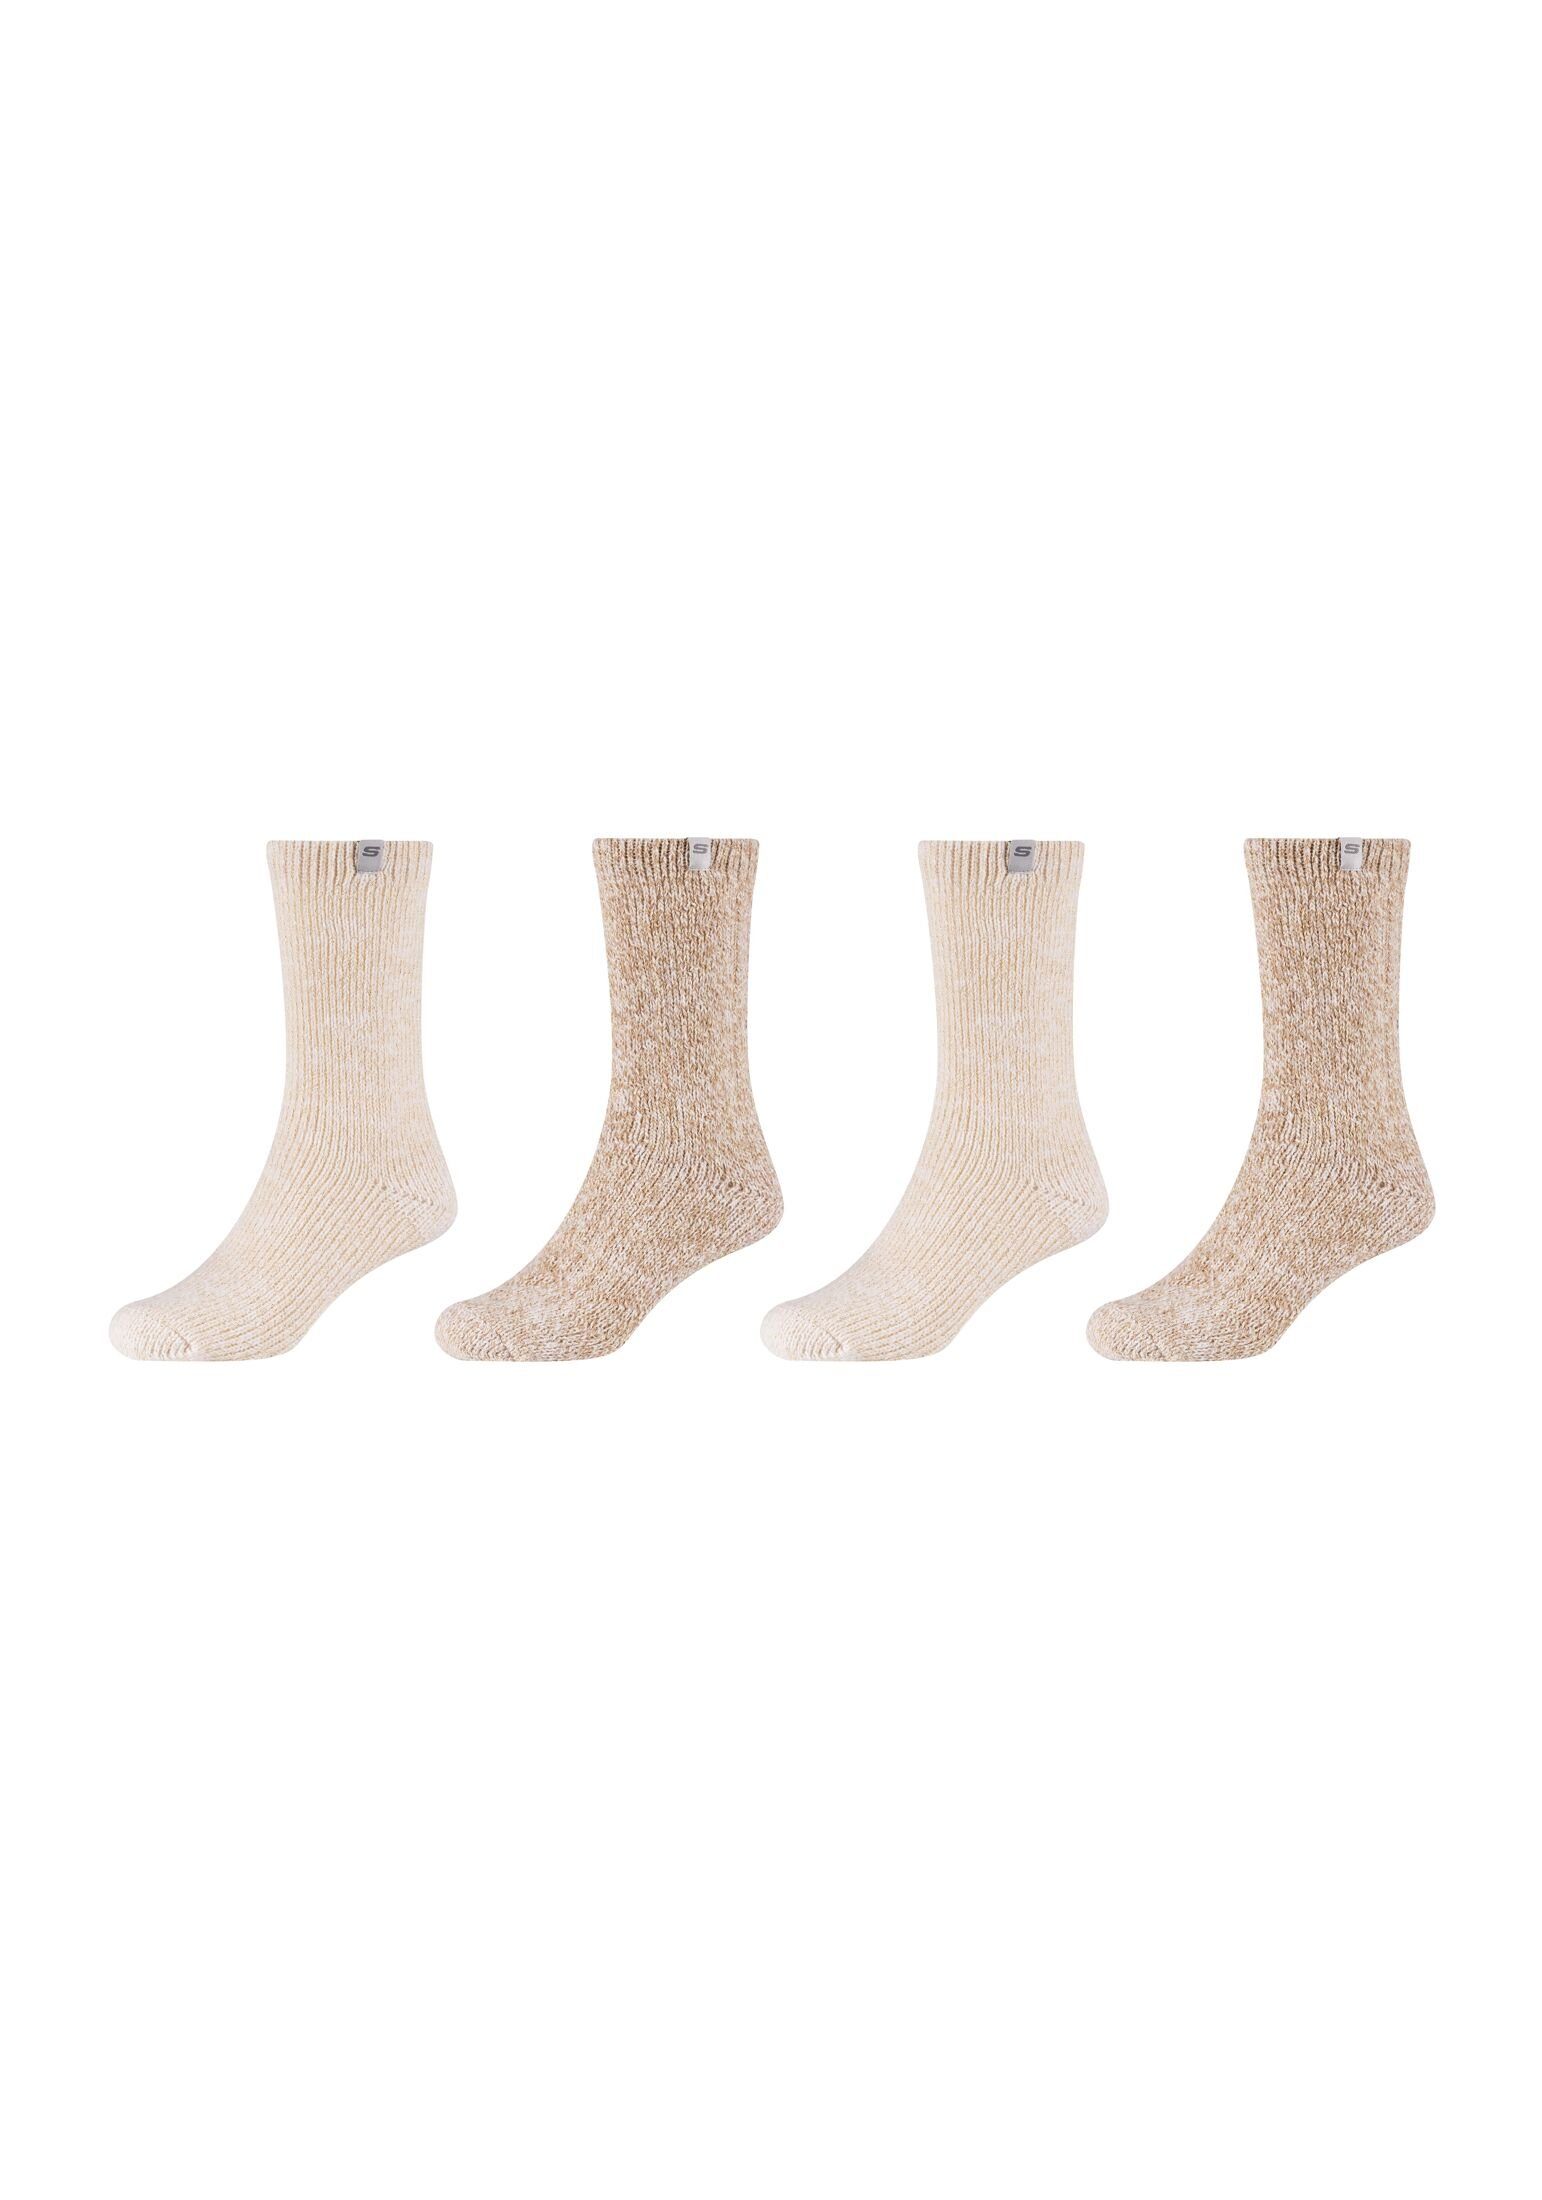 Skechers Socken Socken 4er Pack, Warme Gemütlichkeit: Perfekt für kalte Tage